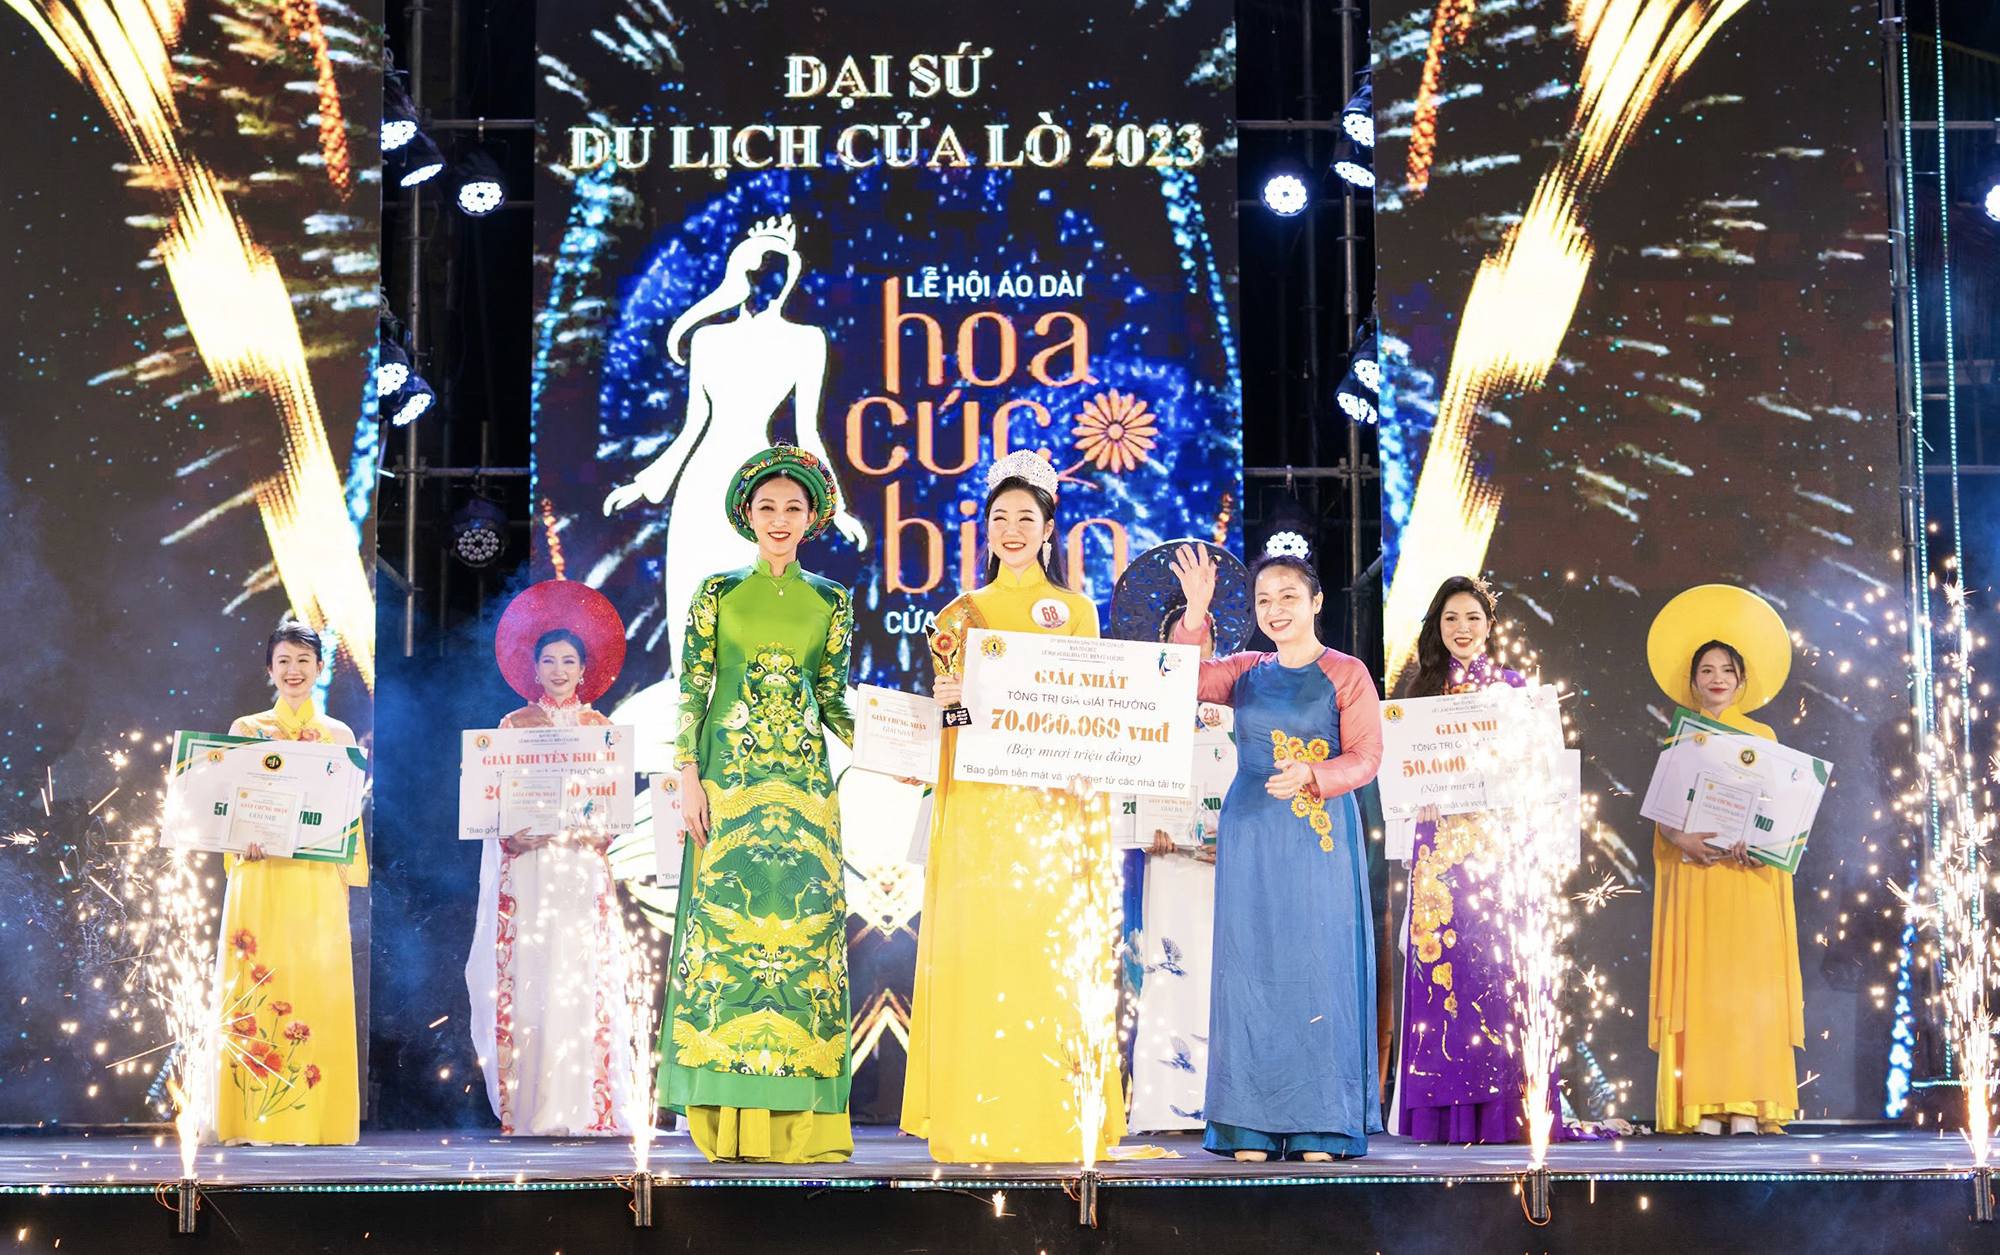 Biện Thị Mỹ Linh đăng quang tại Lễ hội áo dài Hoa cúc biển Cửa Lò 2023.